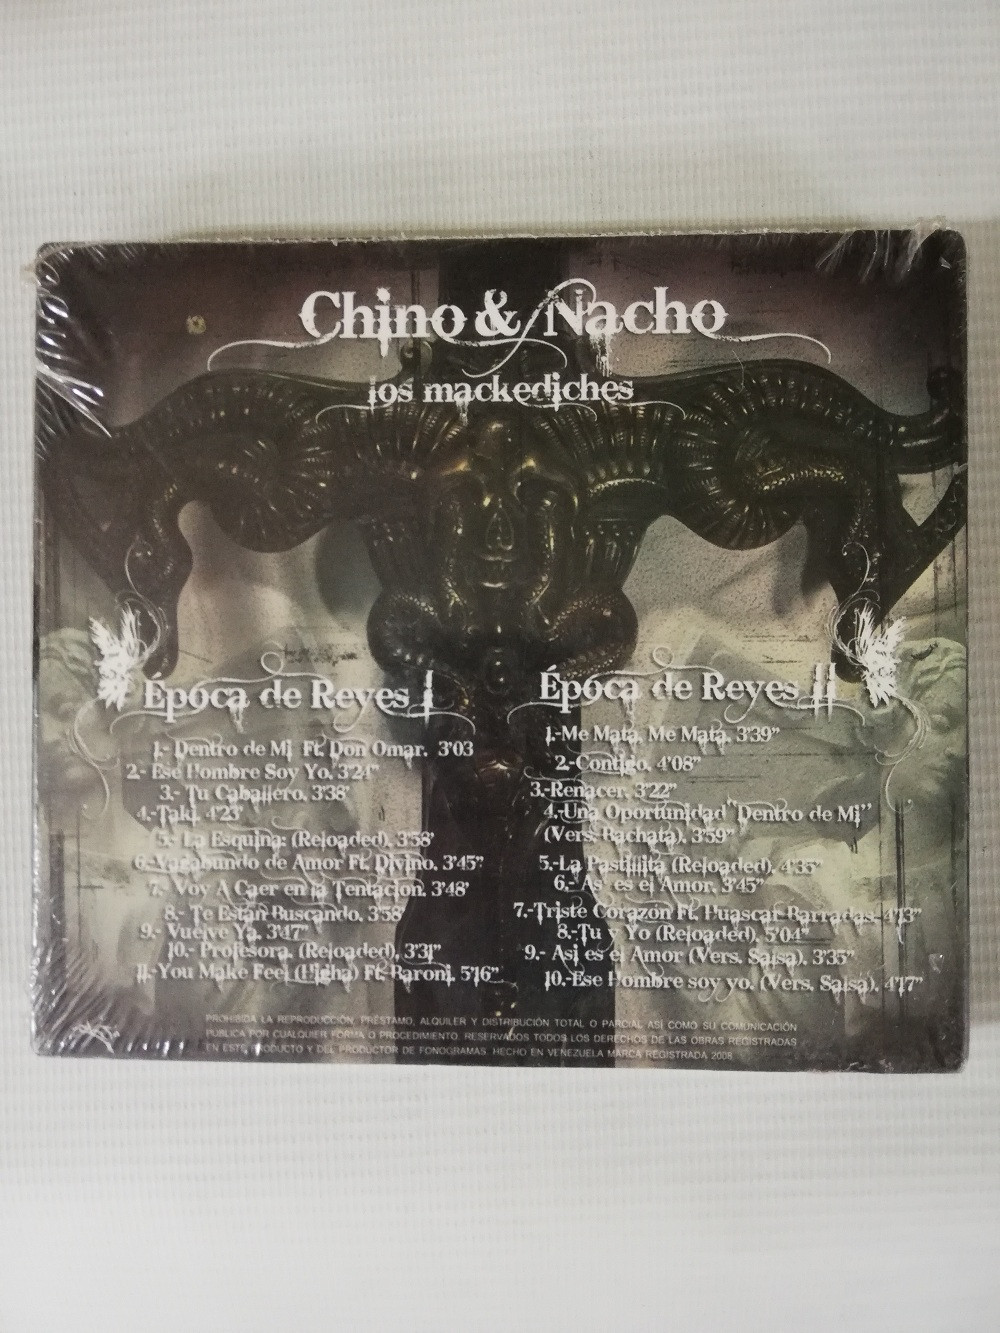 Imagen CD X 2 CHINO & NACHO - EPOCA DE REYES 2